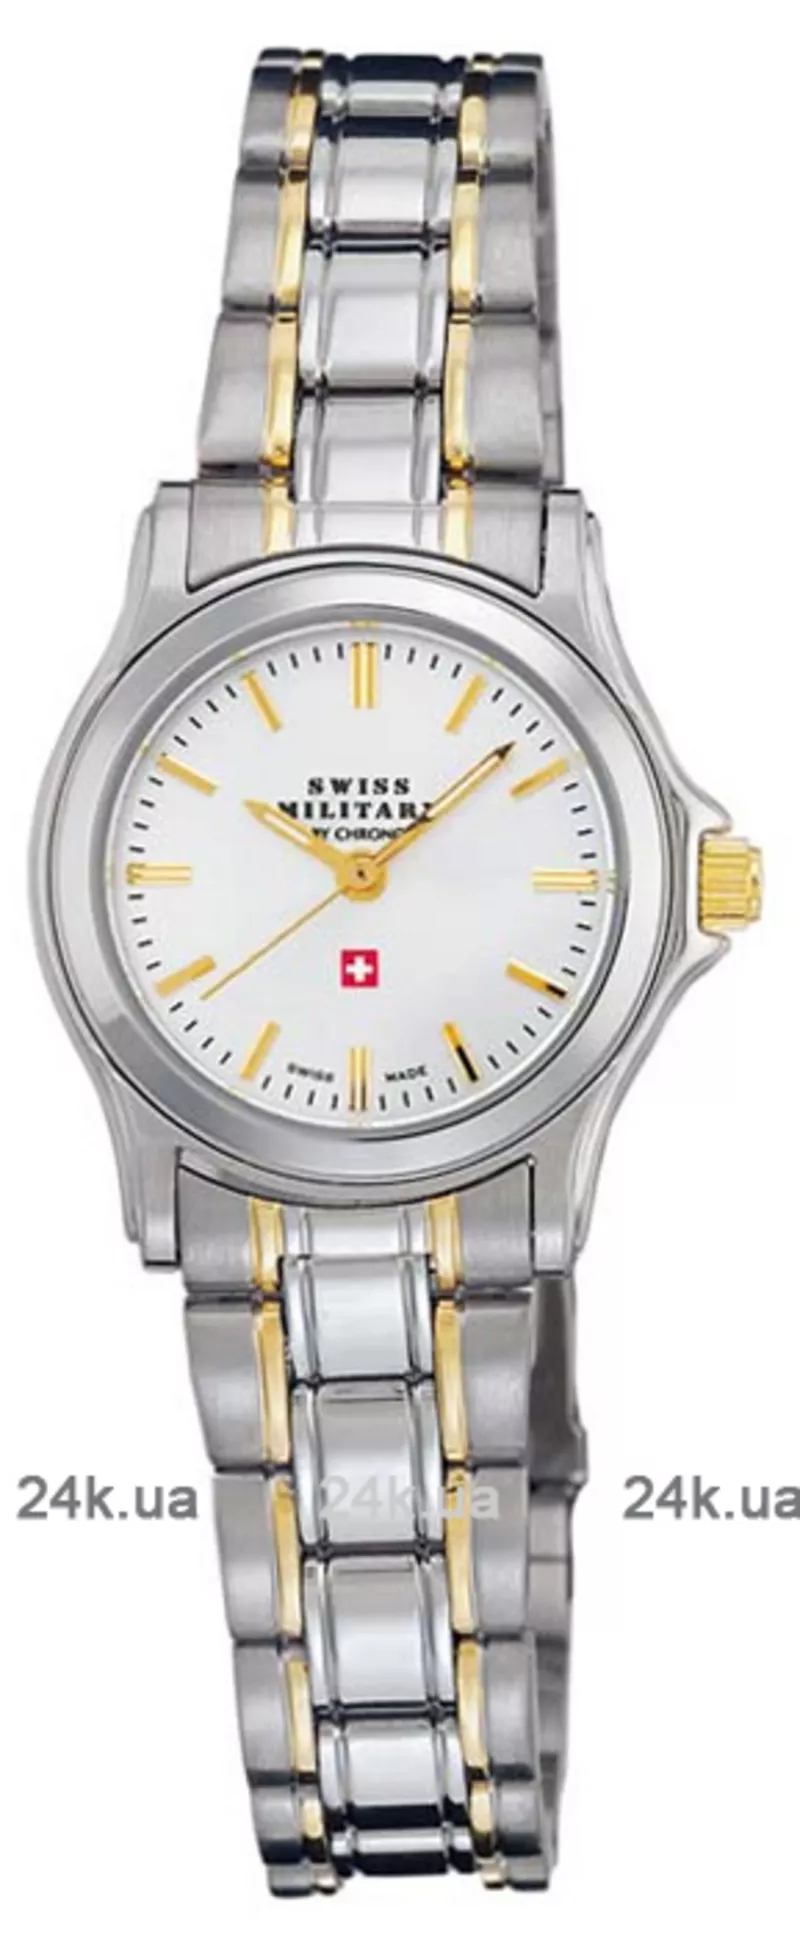 Часы Swiss Military by Chrono 18200BI-2M